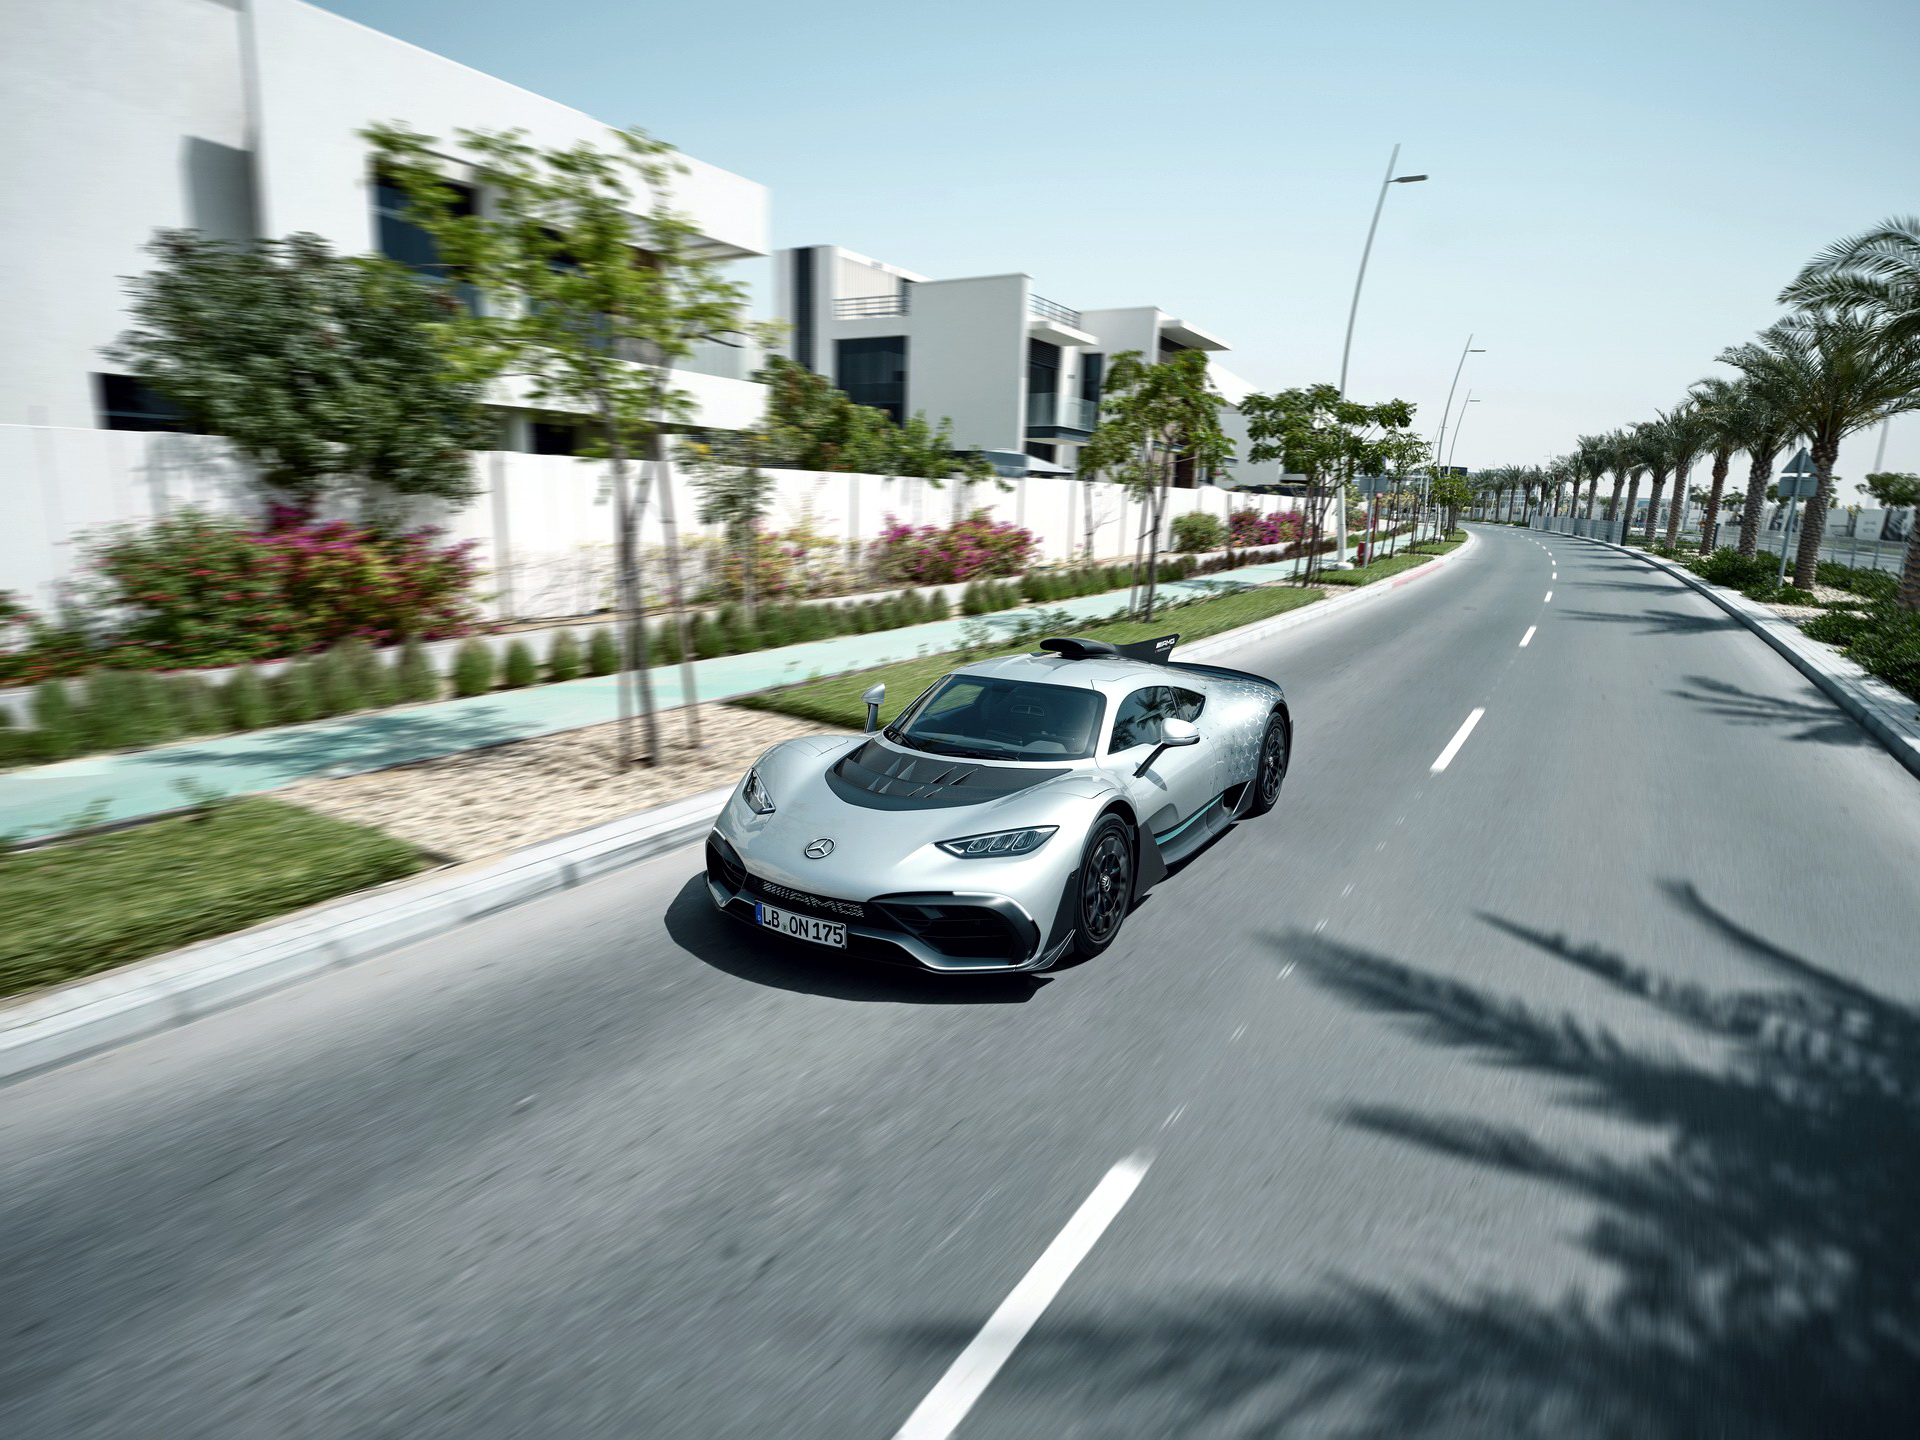 Siêu phẩm Mercedes-AMG One – “Quái vật” triệu USD, động cơ F1 1.049 mã lực ra mắt